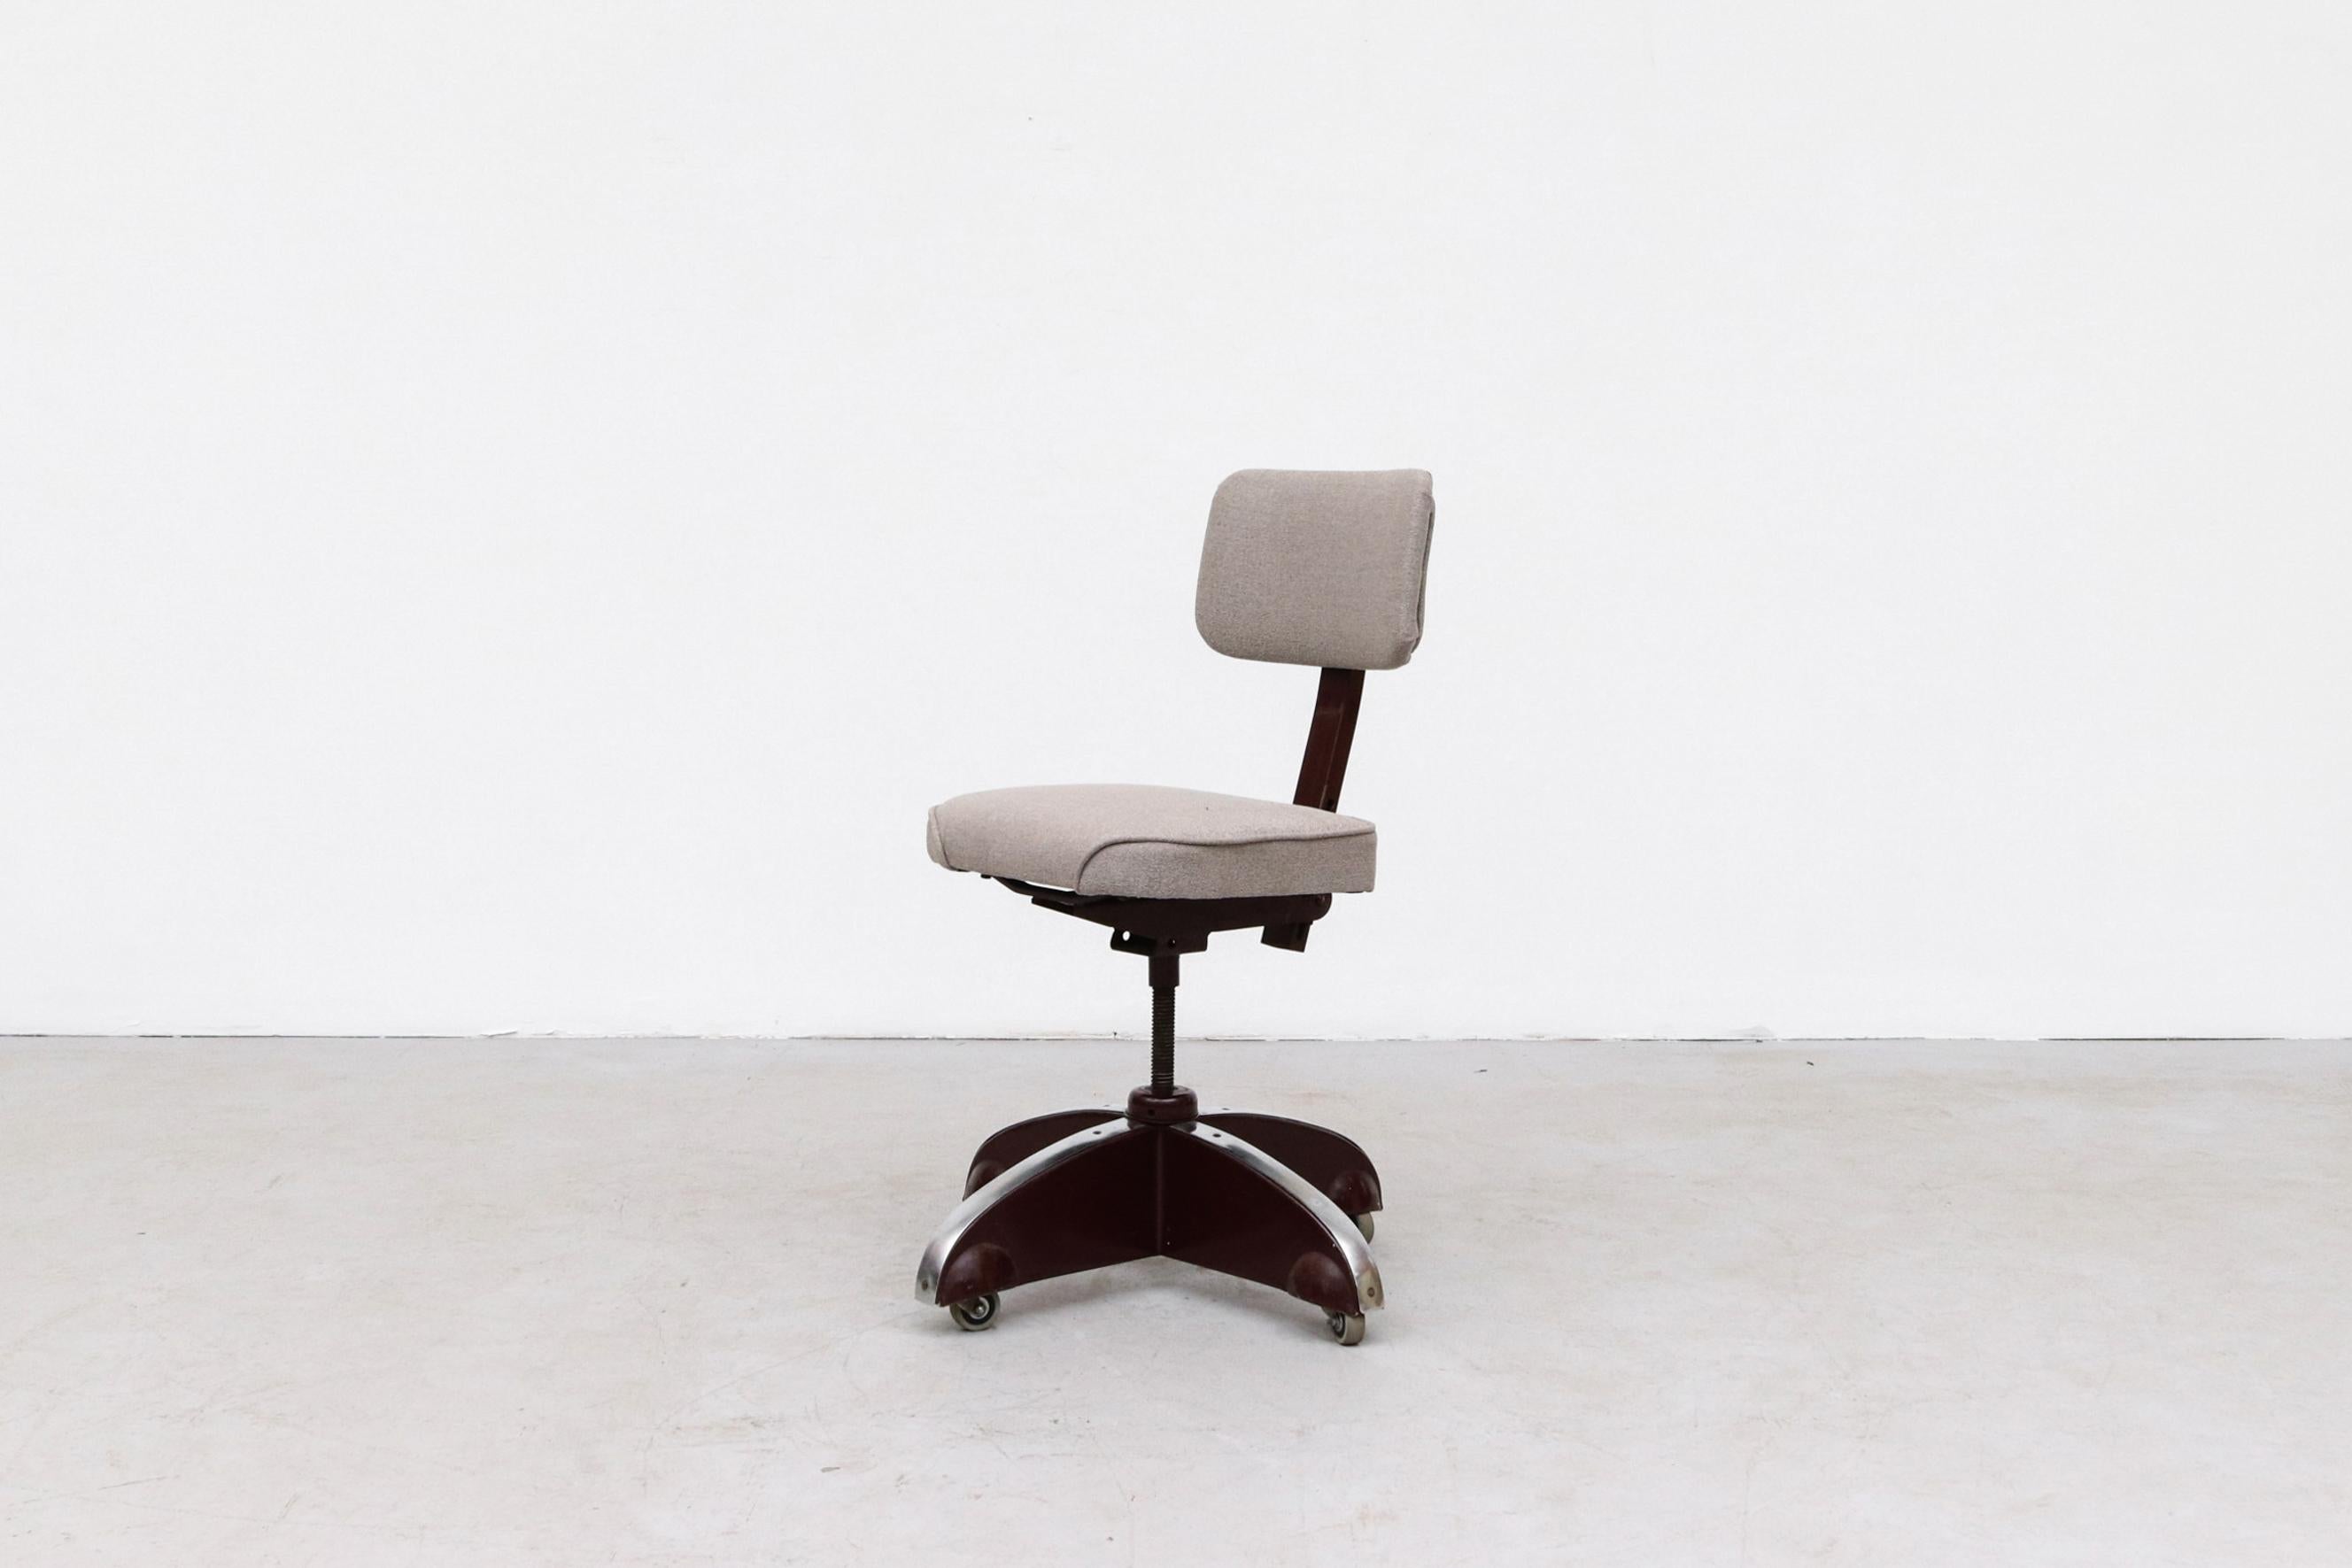 Ahrend De Cirkel Rolling Office Chair. Assise grise nouvellement tapissée, cadre en état d'origine avec usure visible, correspondant à l'âge et à l'utilisation. Le siège tourne pour régler la hauteur.